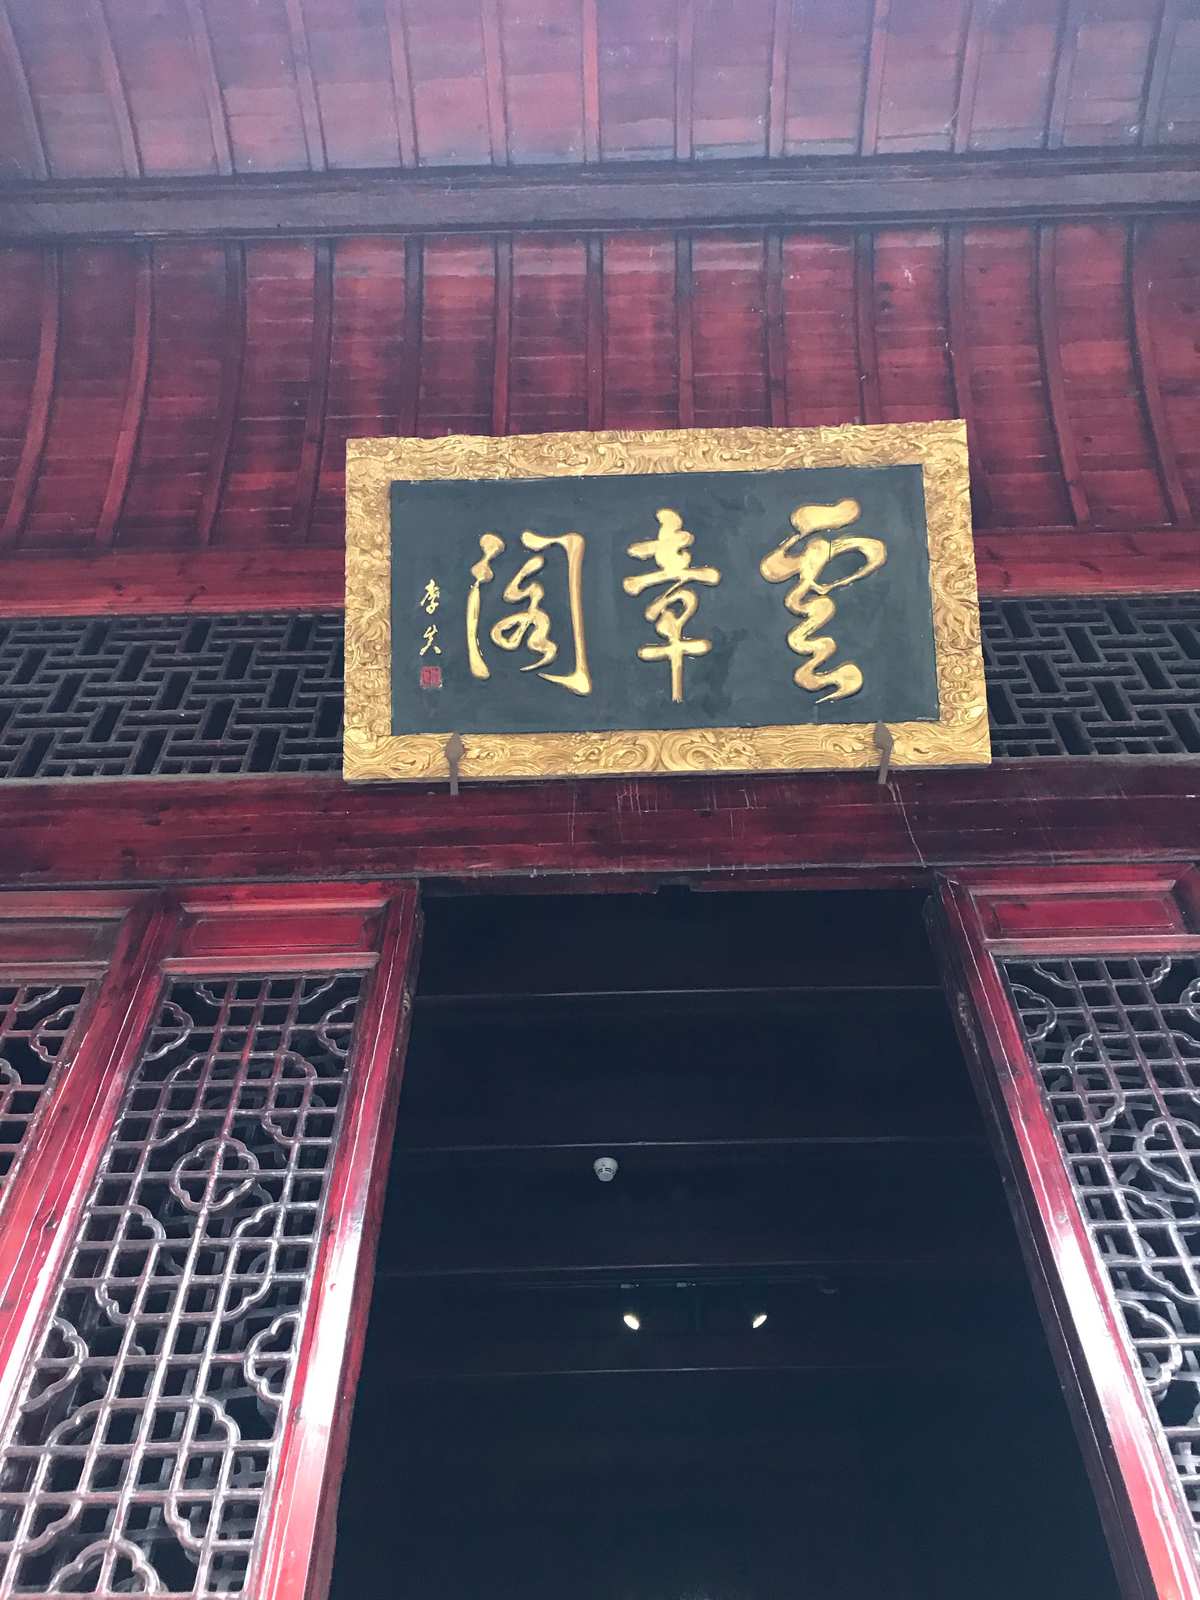 “白鹭洲书院”：在中国历史上举足轻重